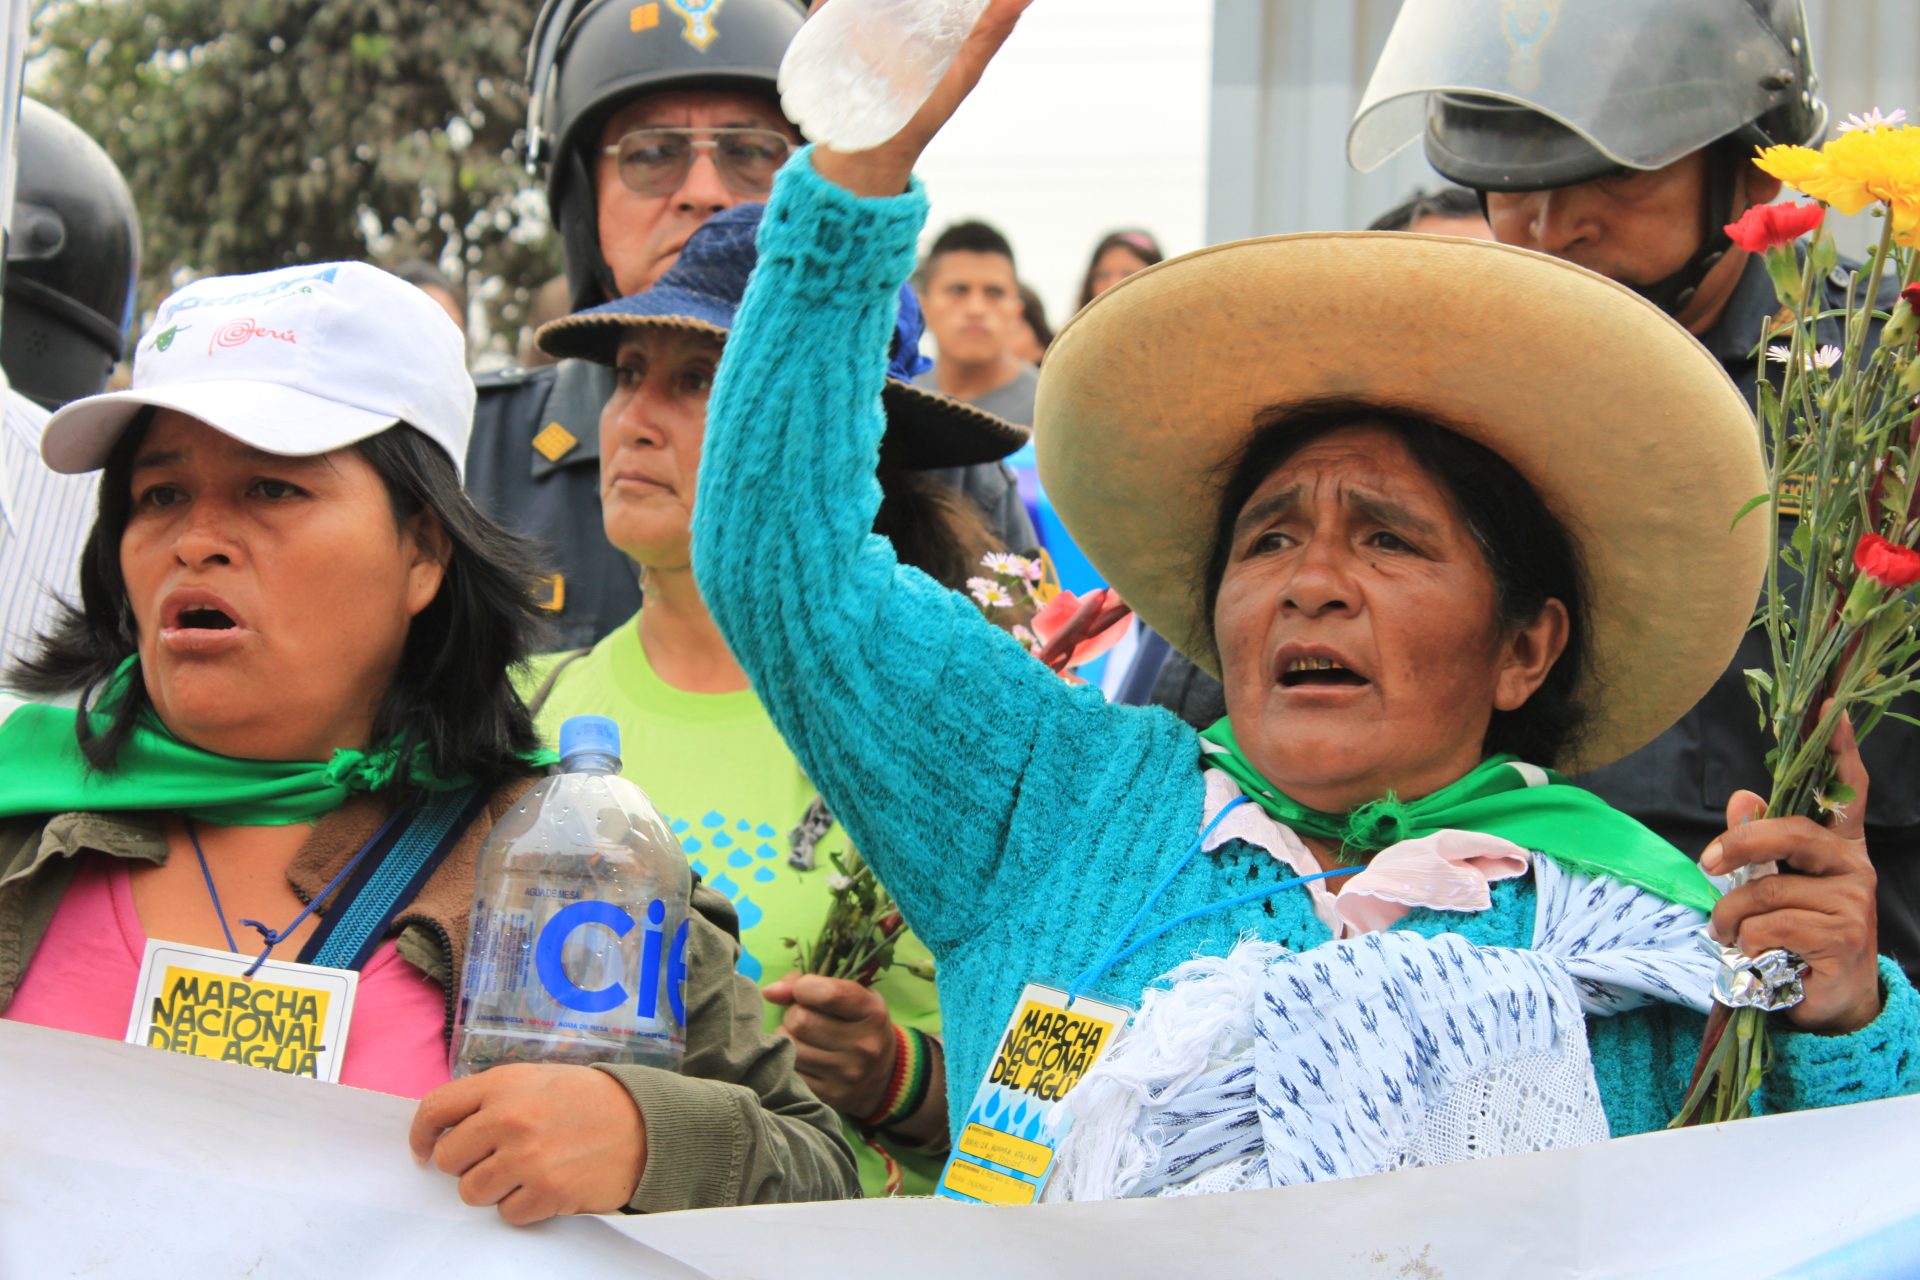 Soziale Teilhabe in Peru – Wunschtraum oder Realität? Zum Stand der wirtschaftlichen, sozialen und kulturellen Rechte in Peru